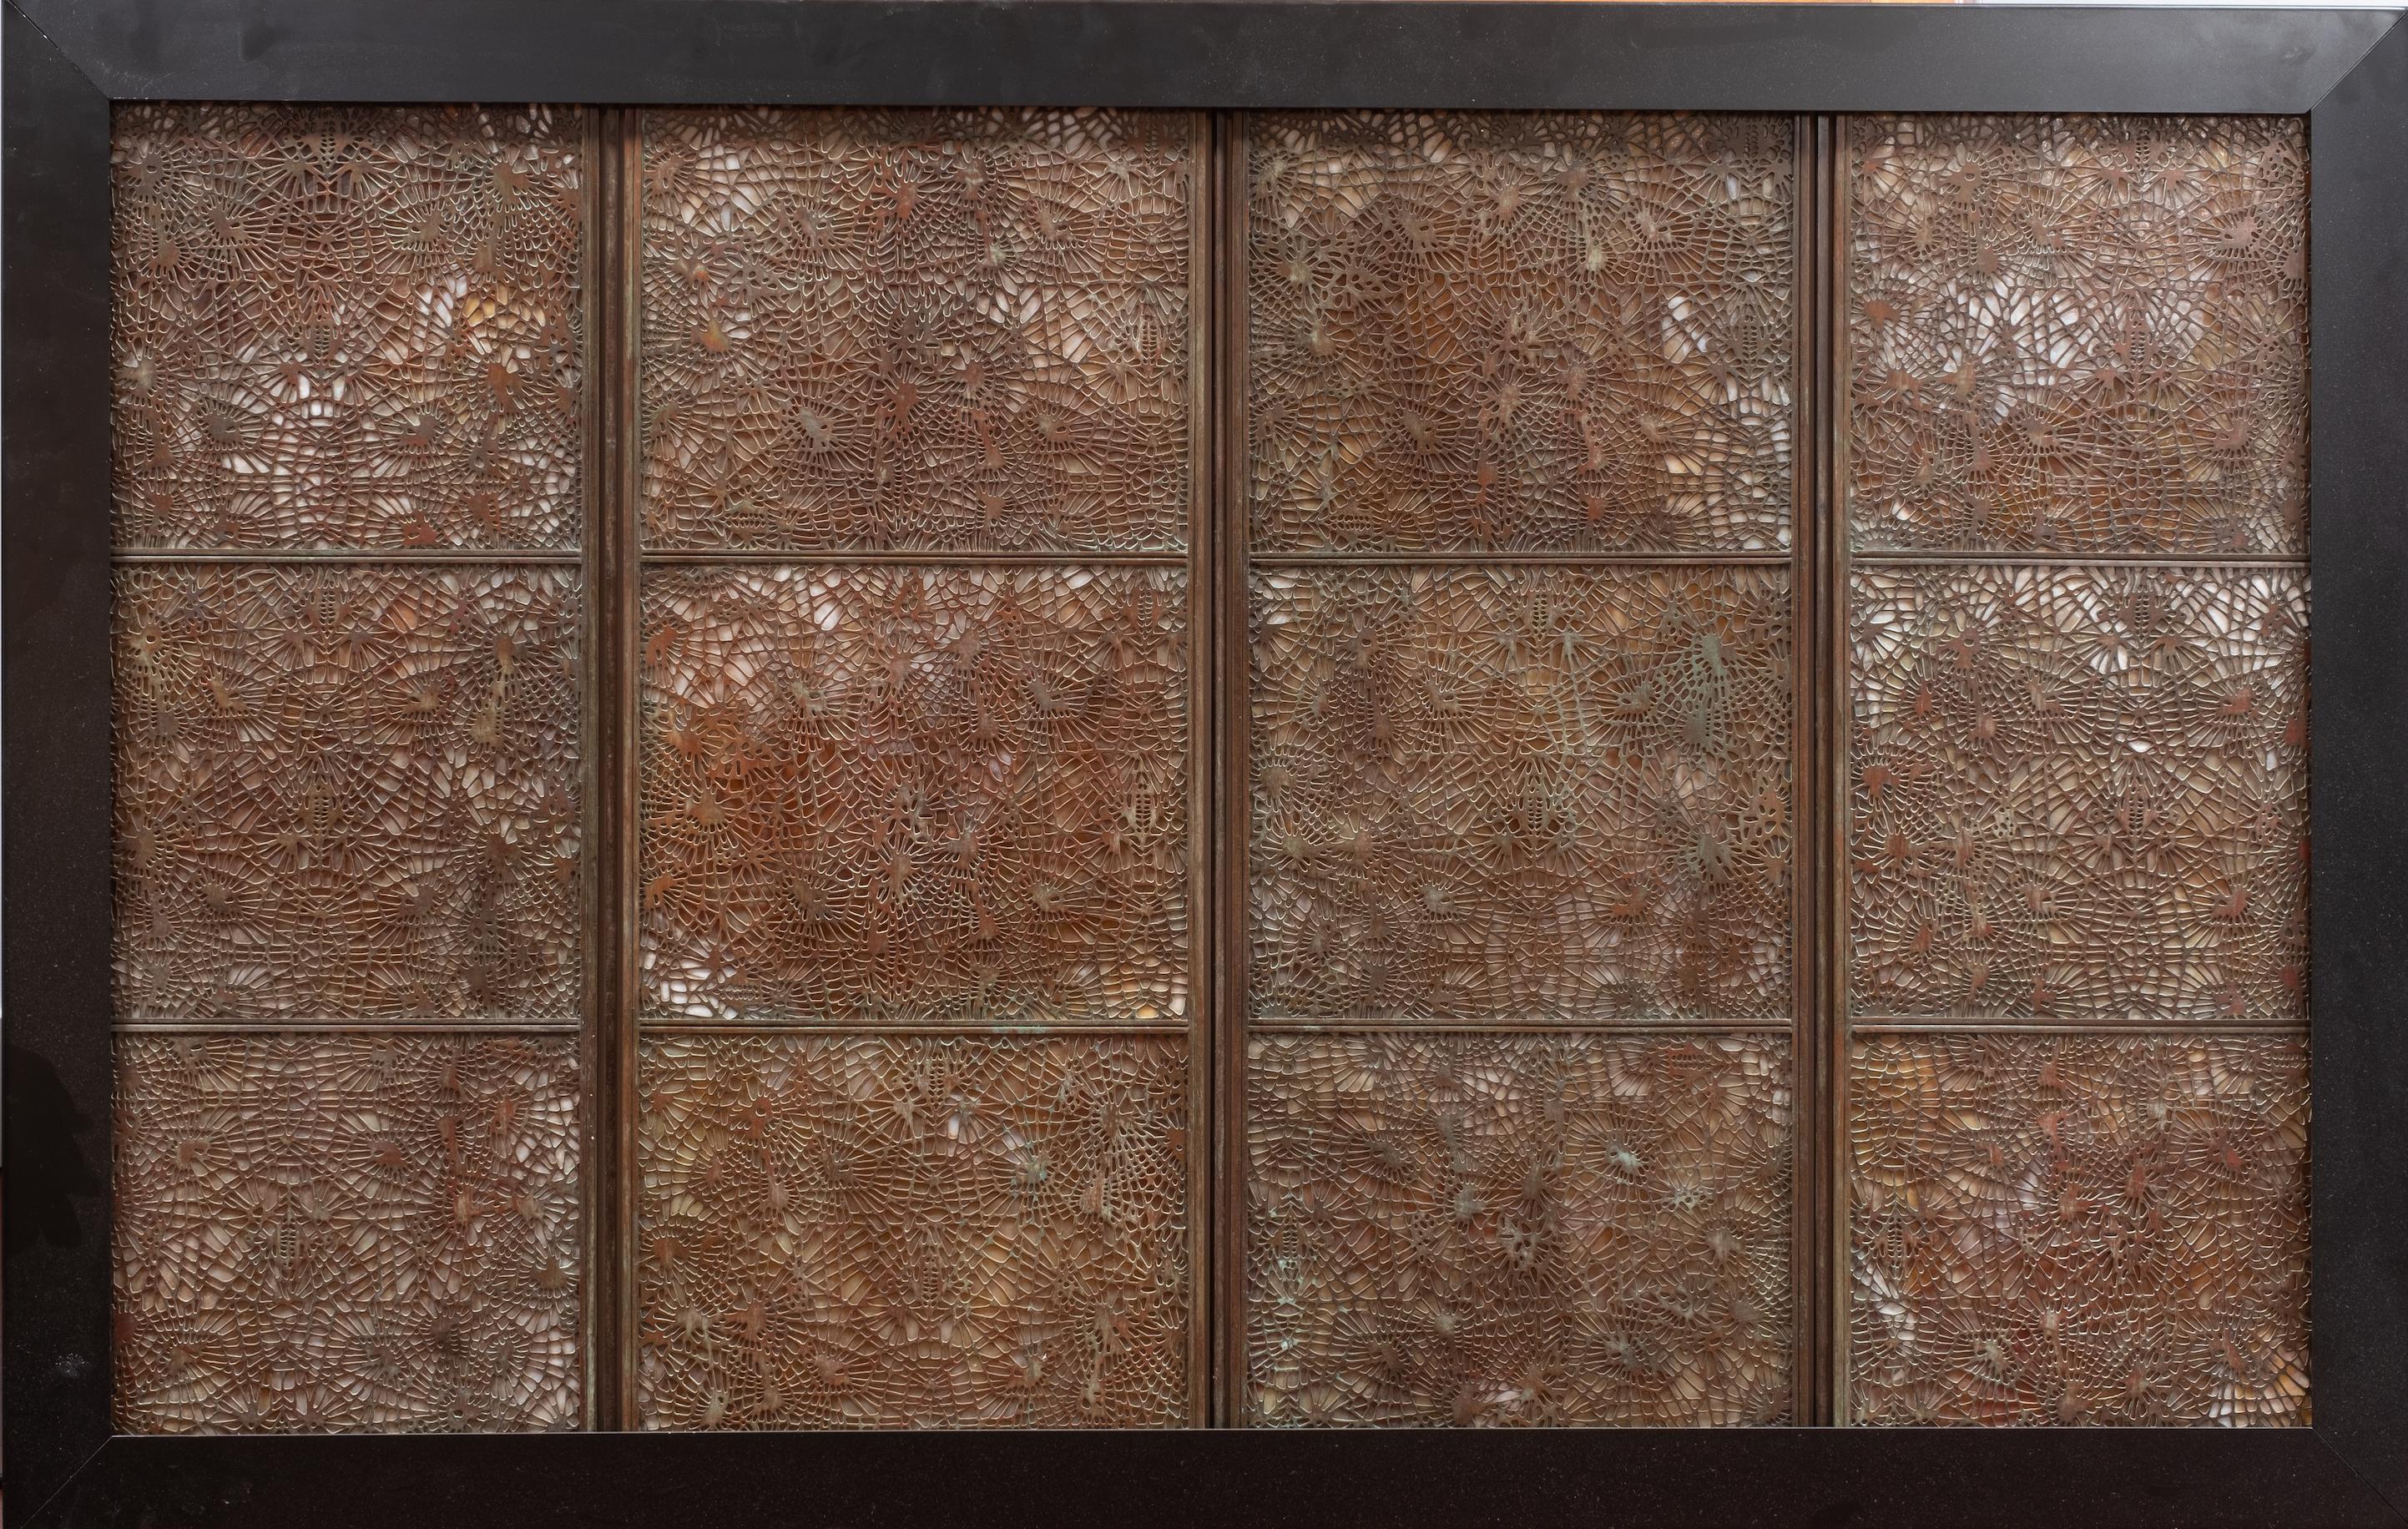 Tiffany Studios, New York, (1878-1930). Dieser große Tiffany Studios Favrile Glas & Bronze vier Panel Folding Bildschirm in der Kiefer-Nadel-Muster wurde Galerie-Qualität in einem schwarzen Metall, Wand montierbar Lichtkasten montiert. Keine